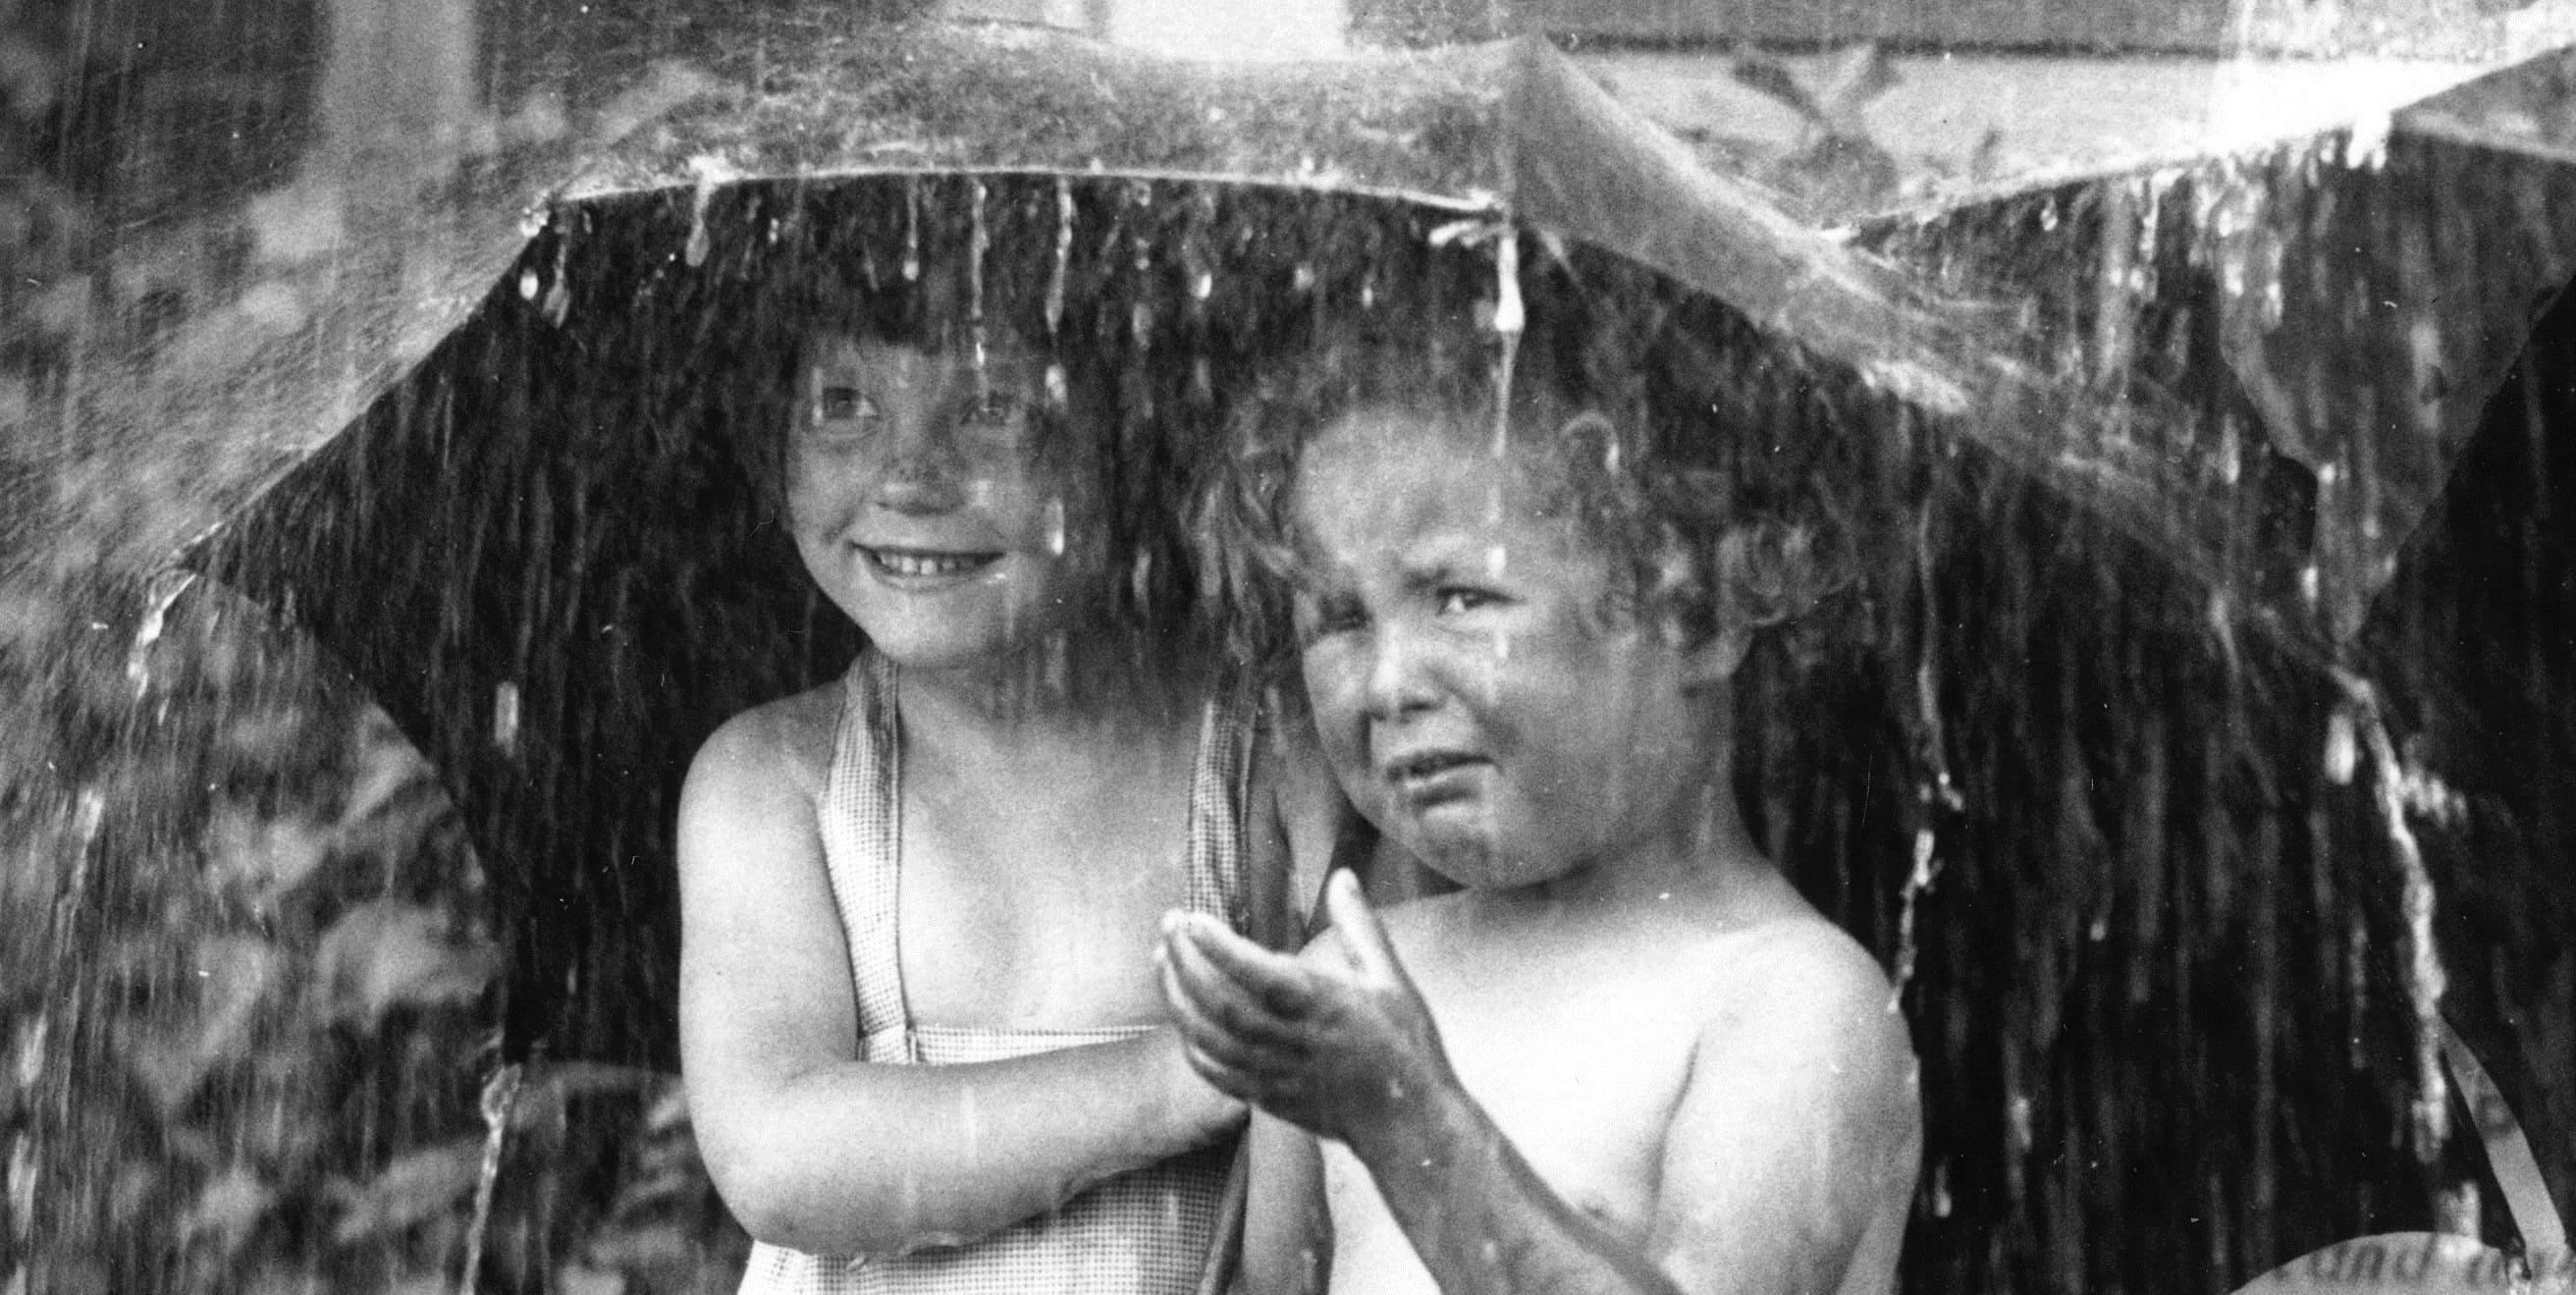 Радовались оба. Два ребенка под дождем. Двое детей под дождем. Два взгляда на жизнь девочки под дождем. Два взгляда на мир девочки под зонтом.